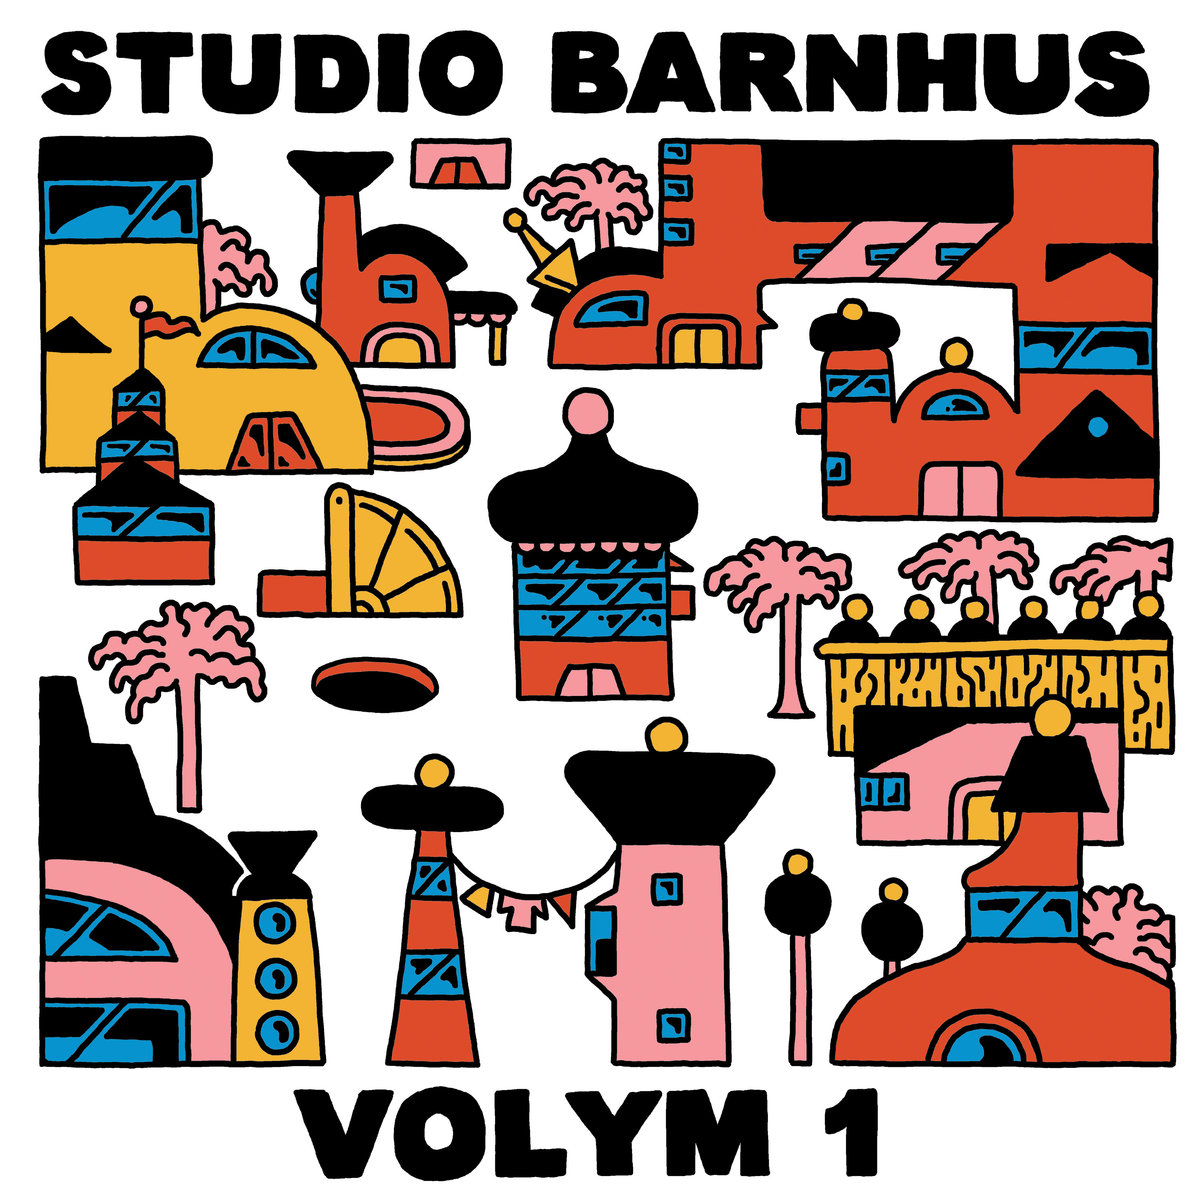 Album of the Week: Studio Barnhus Volym 1